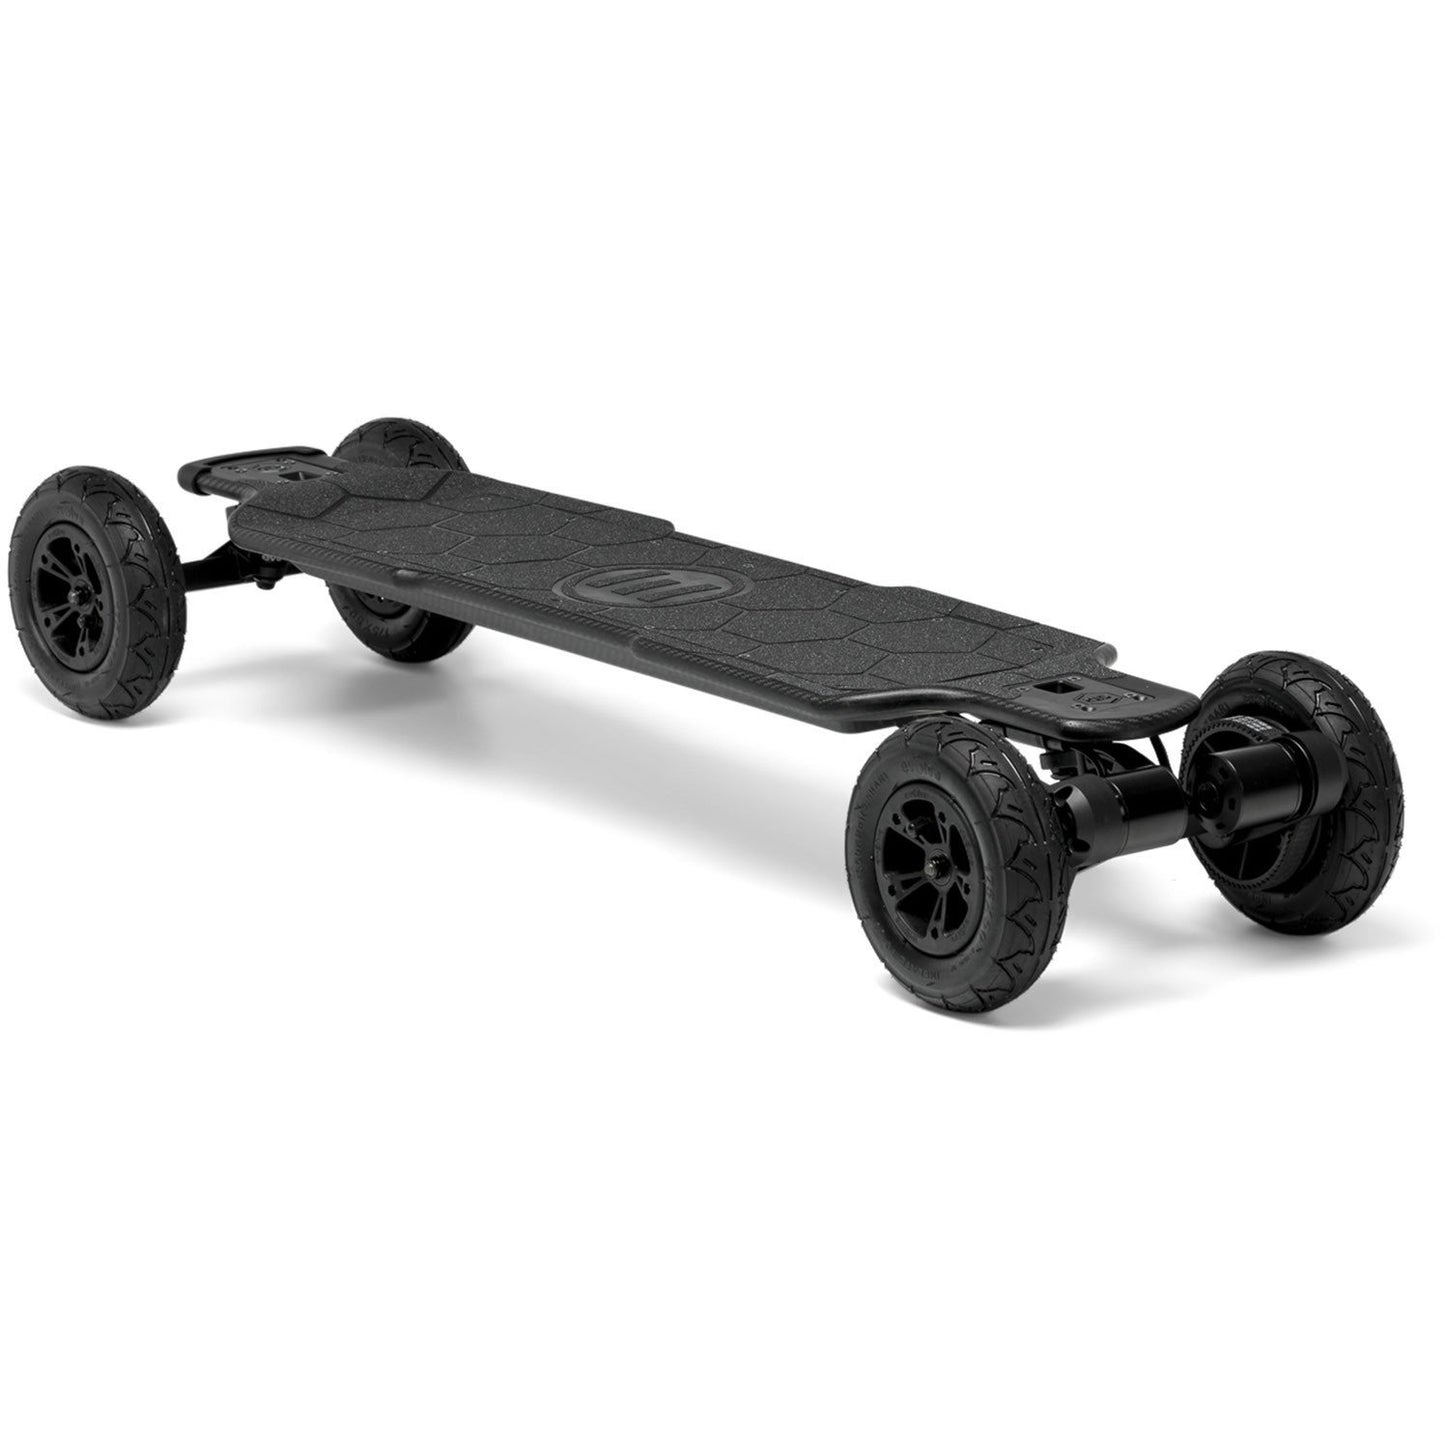 Evolve Skateboards Carbon GTR All Terrain - SERIES 2